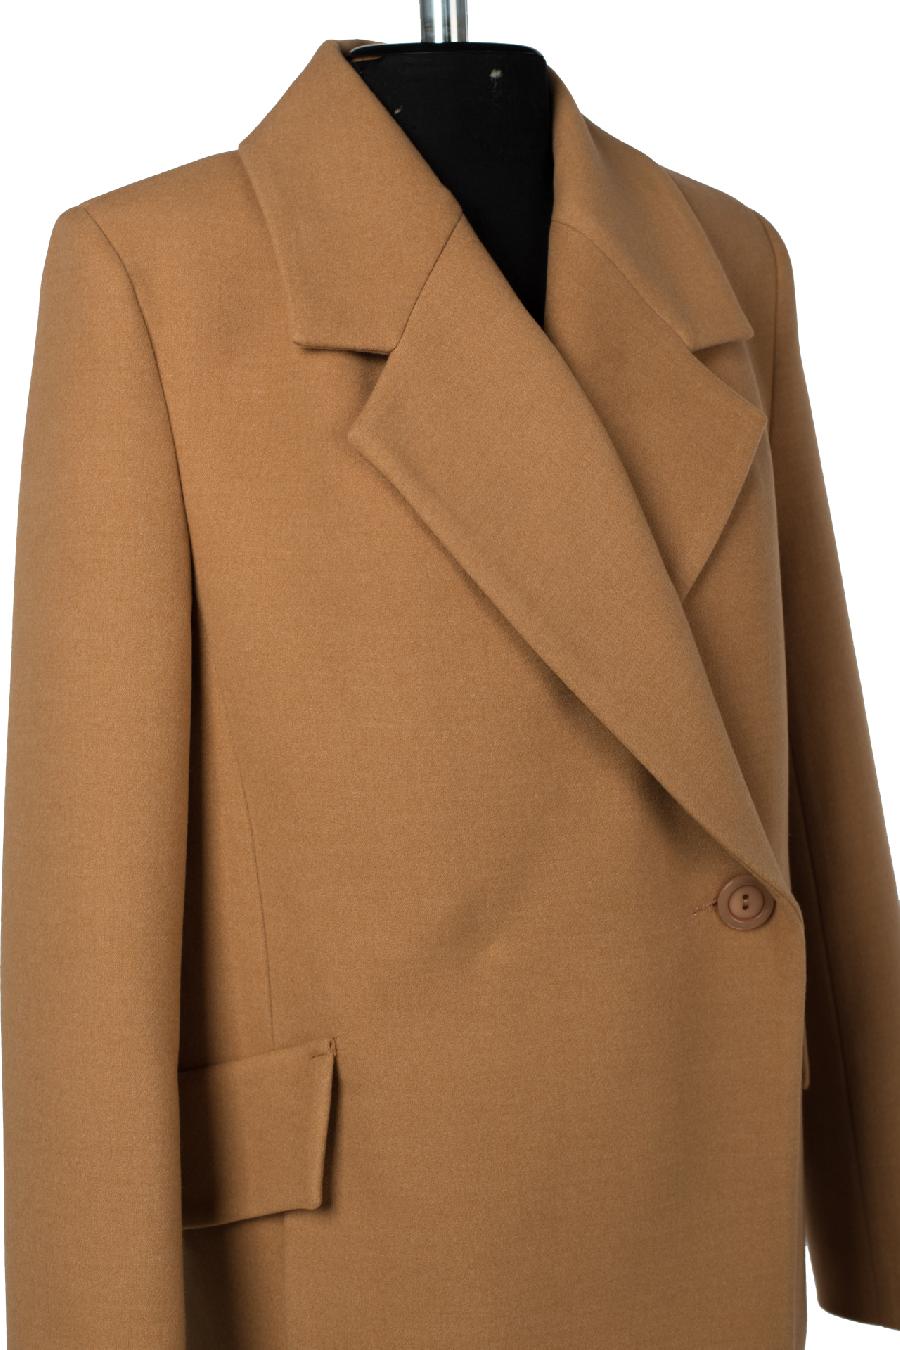 01-11258 Пальто женское демисезонное (пояс) Пальтовая ткань Кэмел